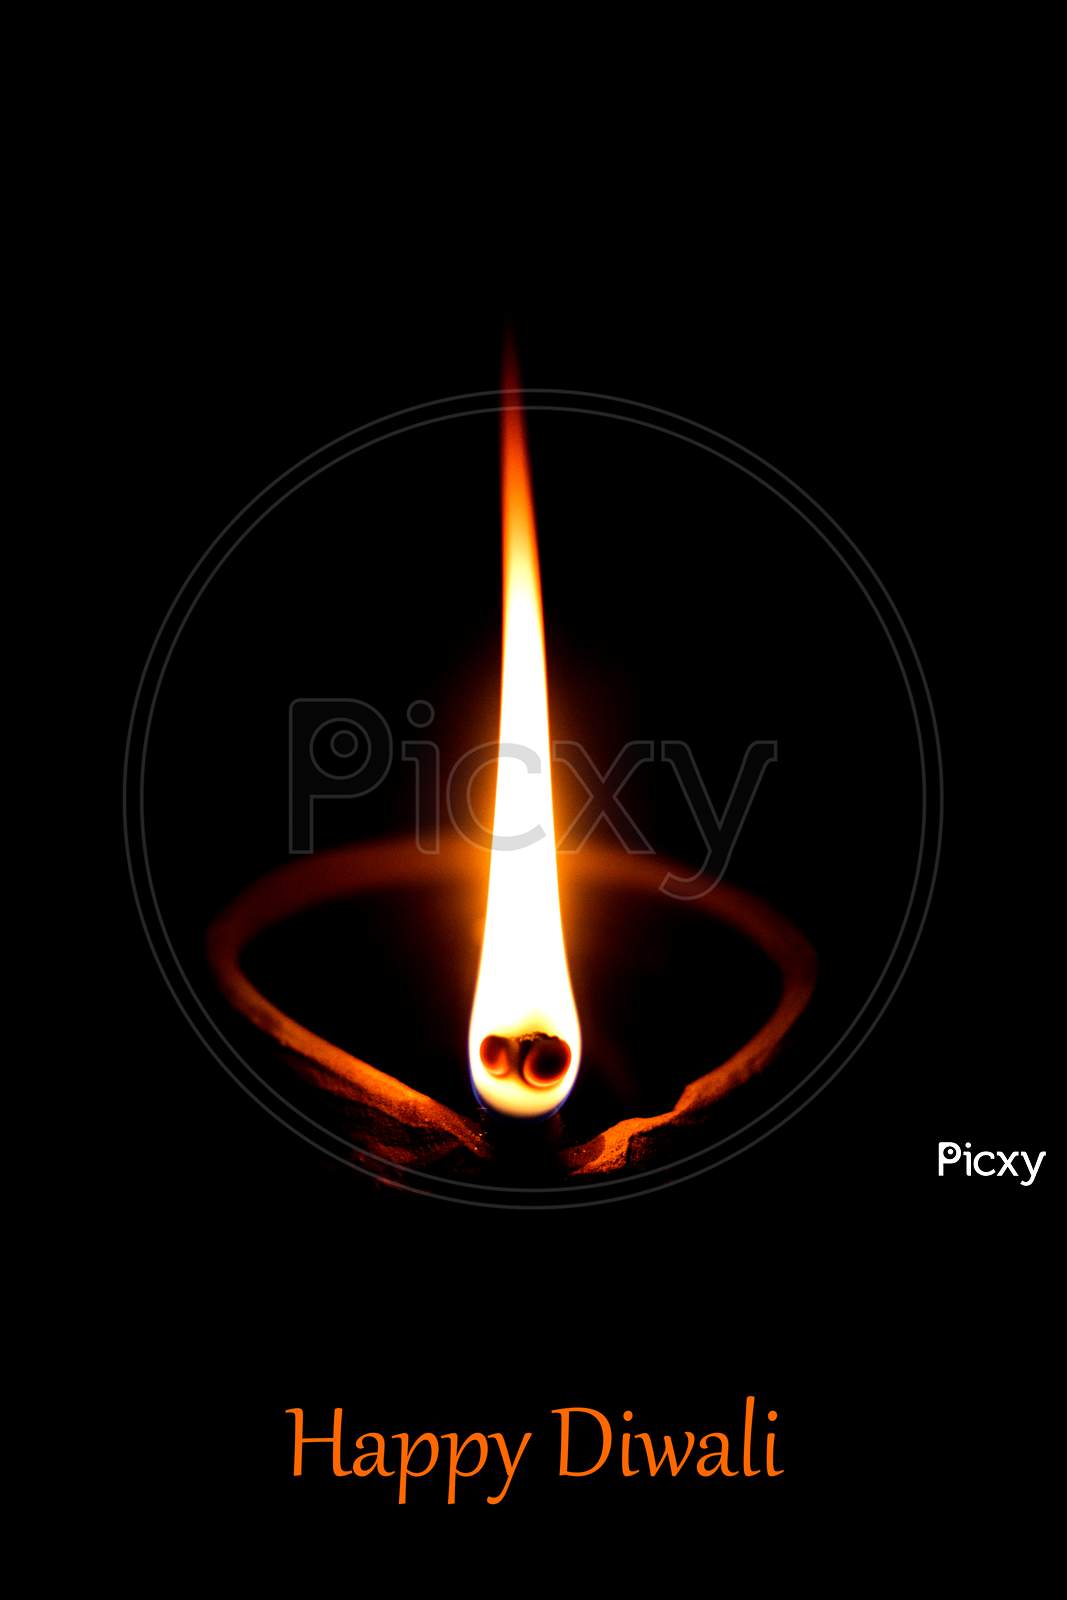 Image of Happy Diwali - Diya lamps lit during diwali celebration ...